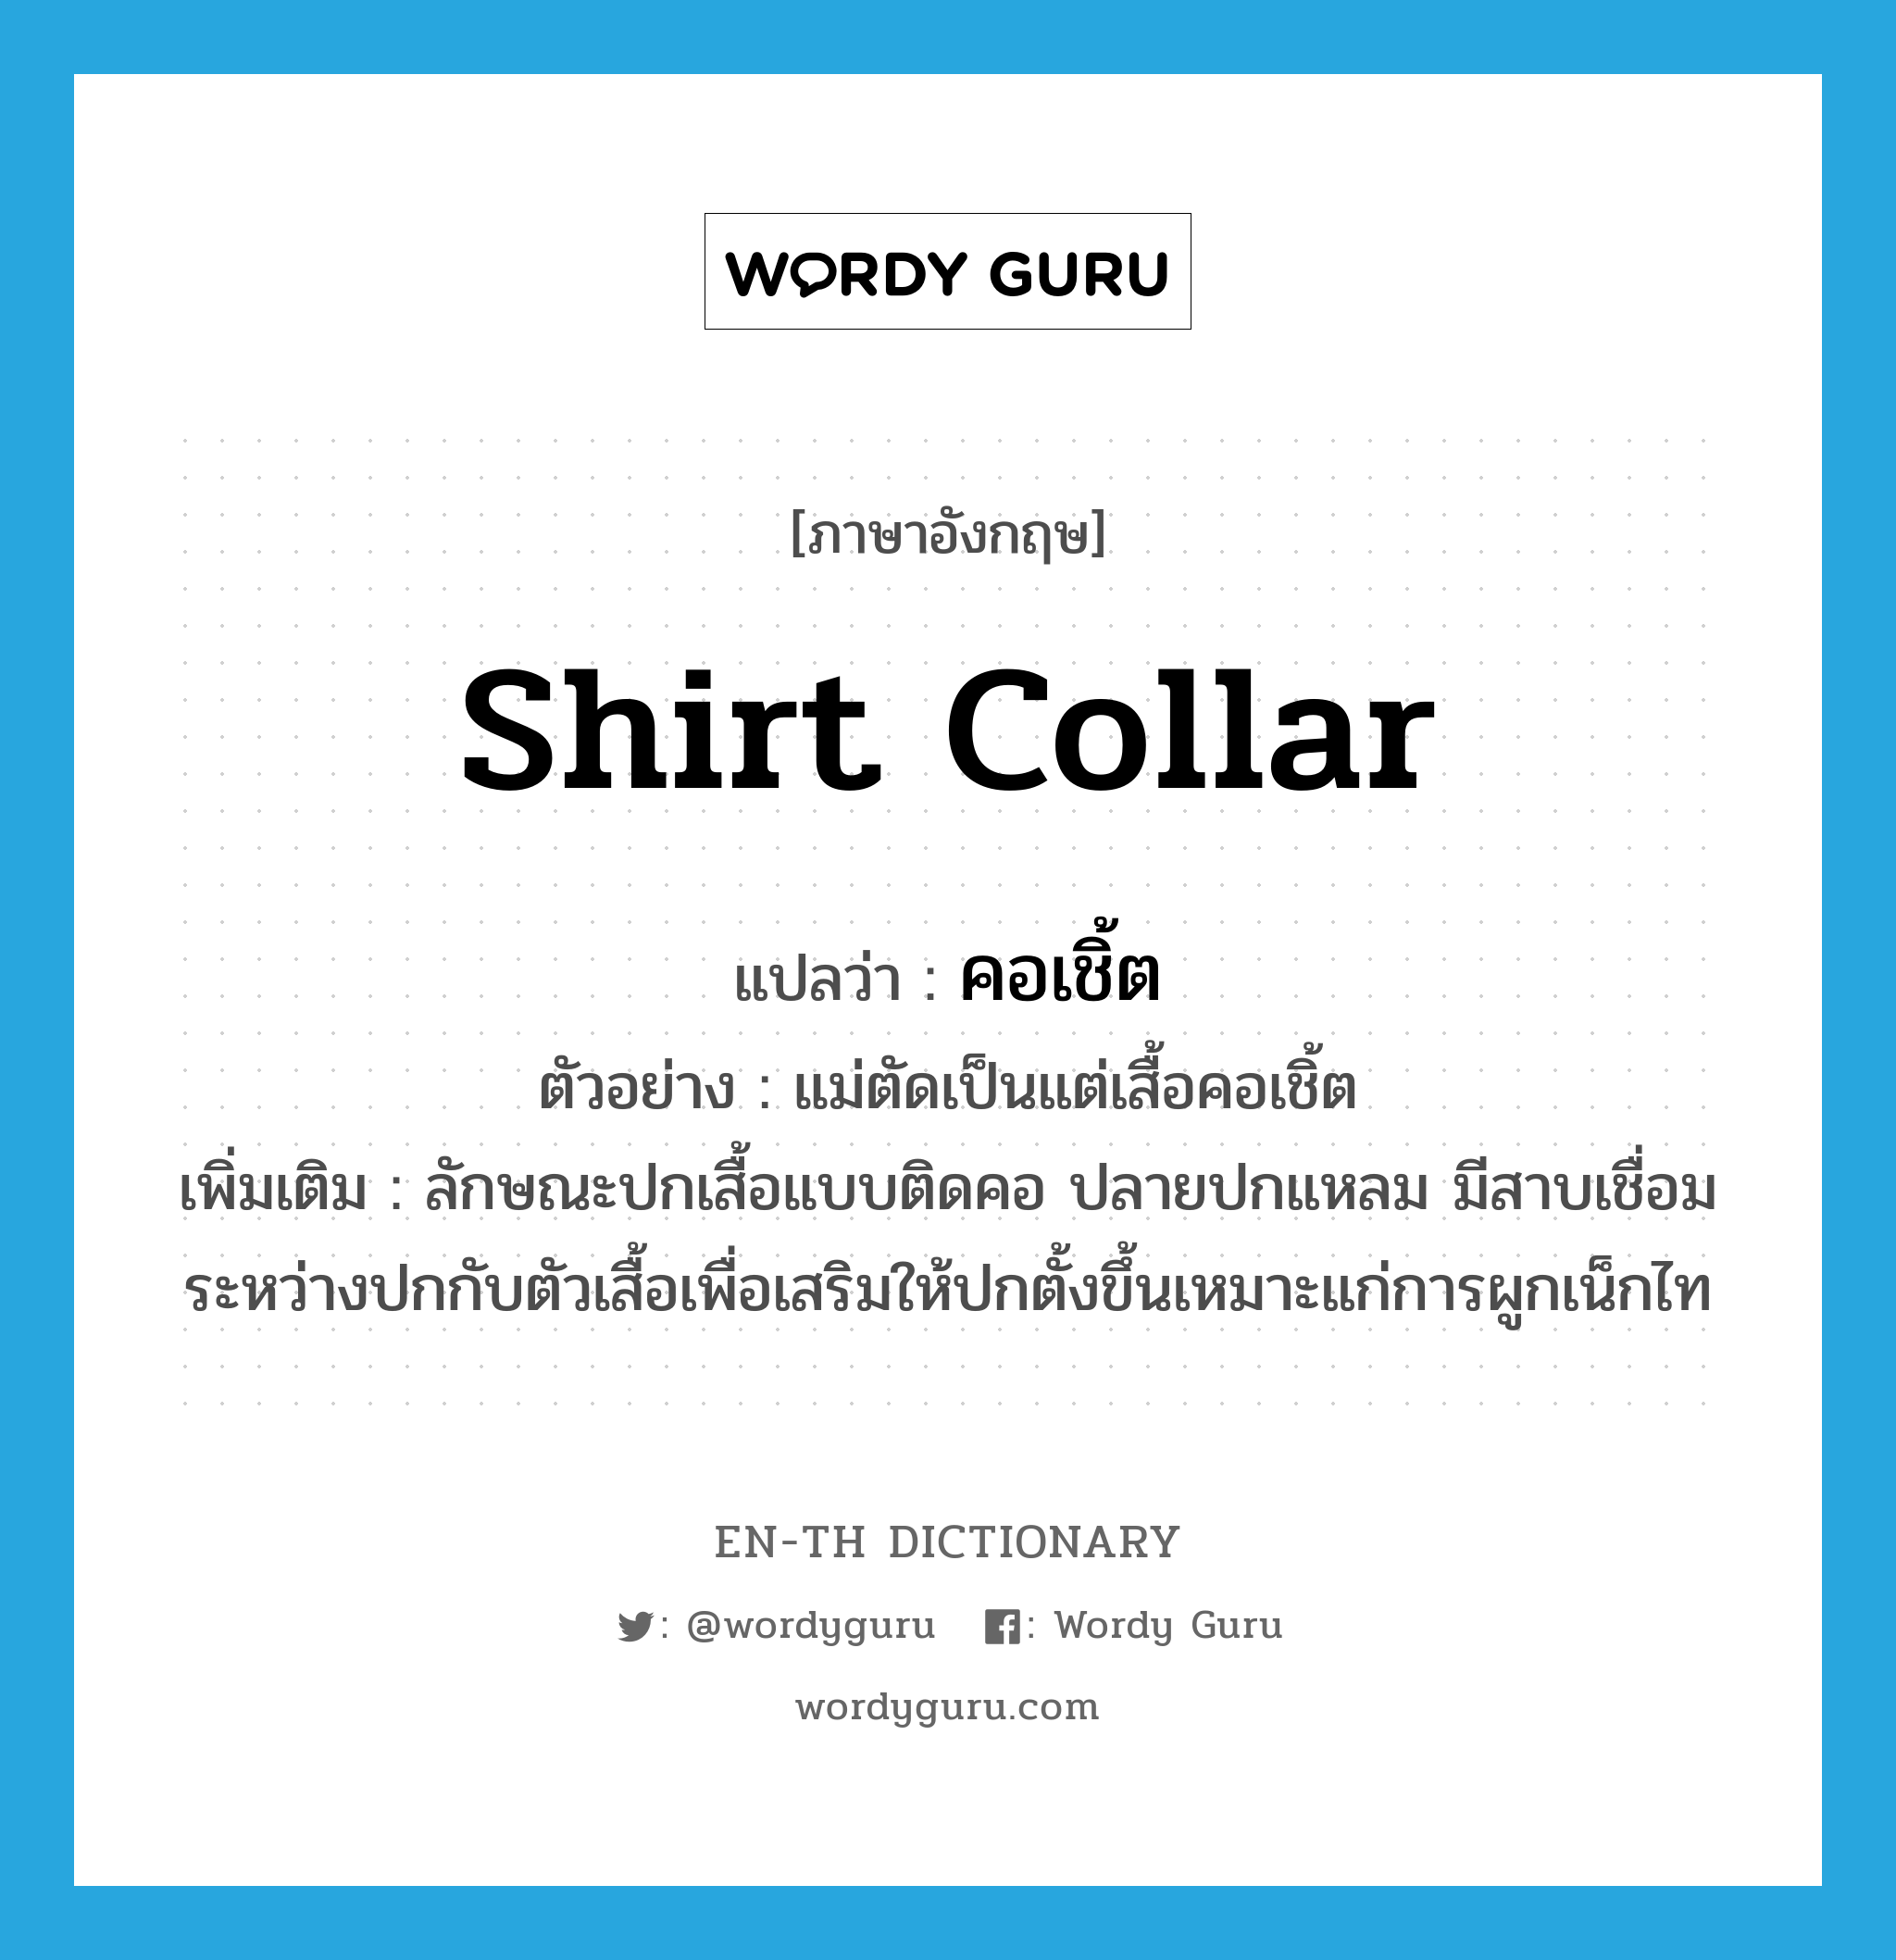 shirt collar แปลว่า?, คำศัพท์ภาษาอังกฤษ shirt collar แปลว่า คอเชิ้ต ประเภท N ตัวอย่าง แม่ตัดเป็นแต่เสื้อคอเชิ้ต เพิ่มเติม ลักษณะปกเสื้อแบบติดคอ ปลายปกแหลม มีสาบเชื่อมระหว่างปกกับตัวเสื้อเพื่อเสริมให้ปกตั้งขึ้นเหมาะแก่การผูกเน็กไท หมวด N